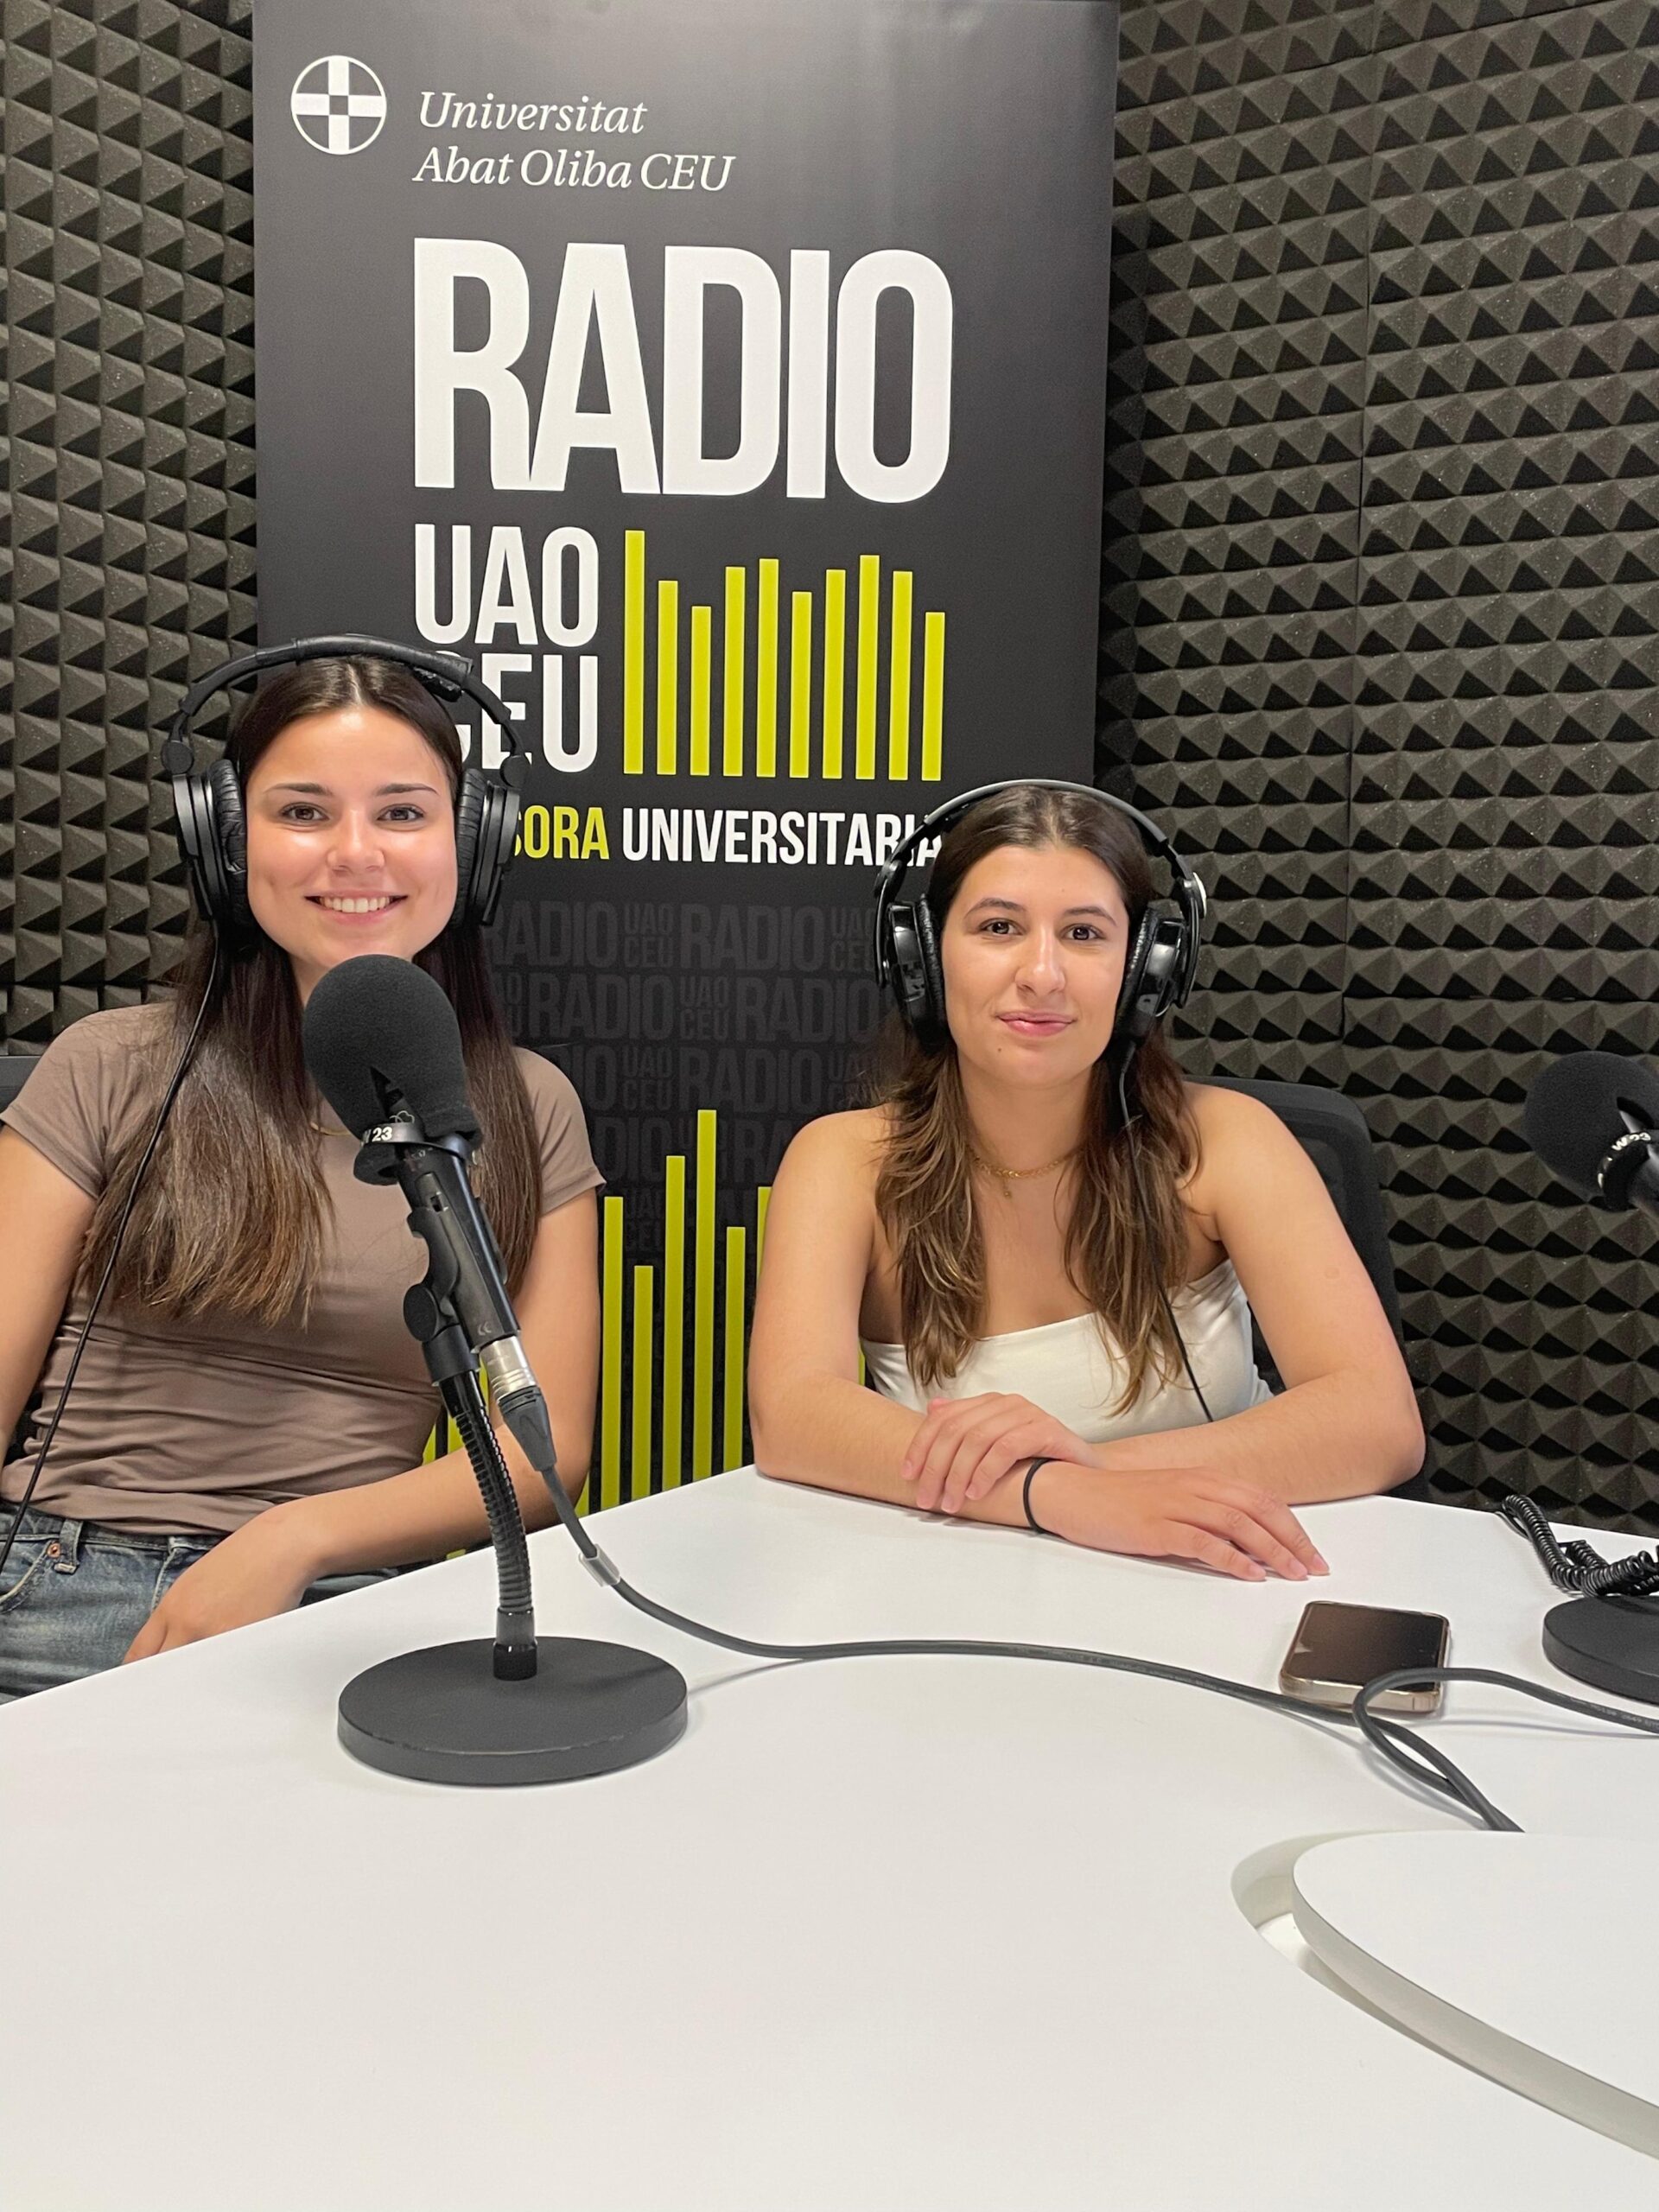 Leonor Paulino y Constança Veloso durante la entrevista llevada a cabo en el estudio de radio.